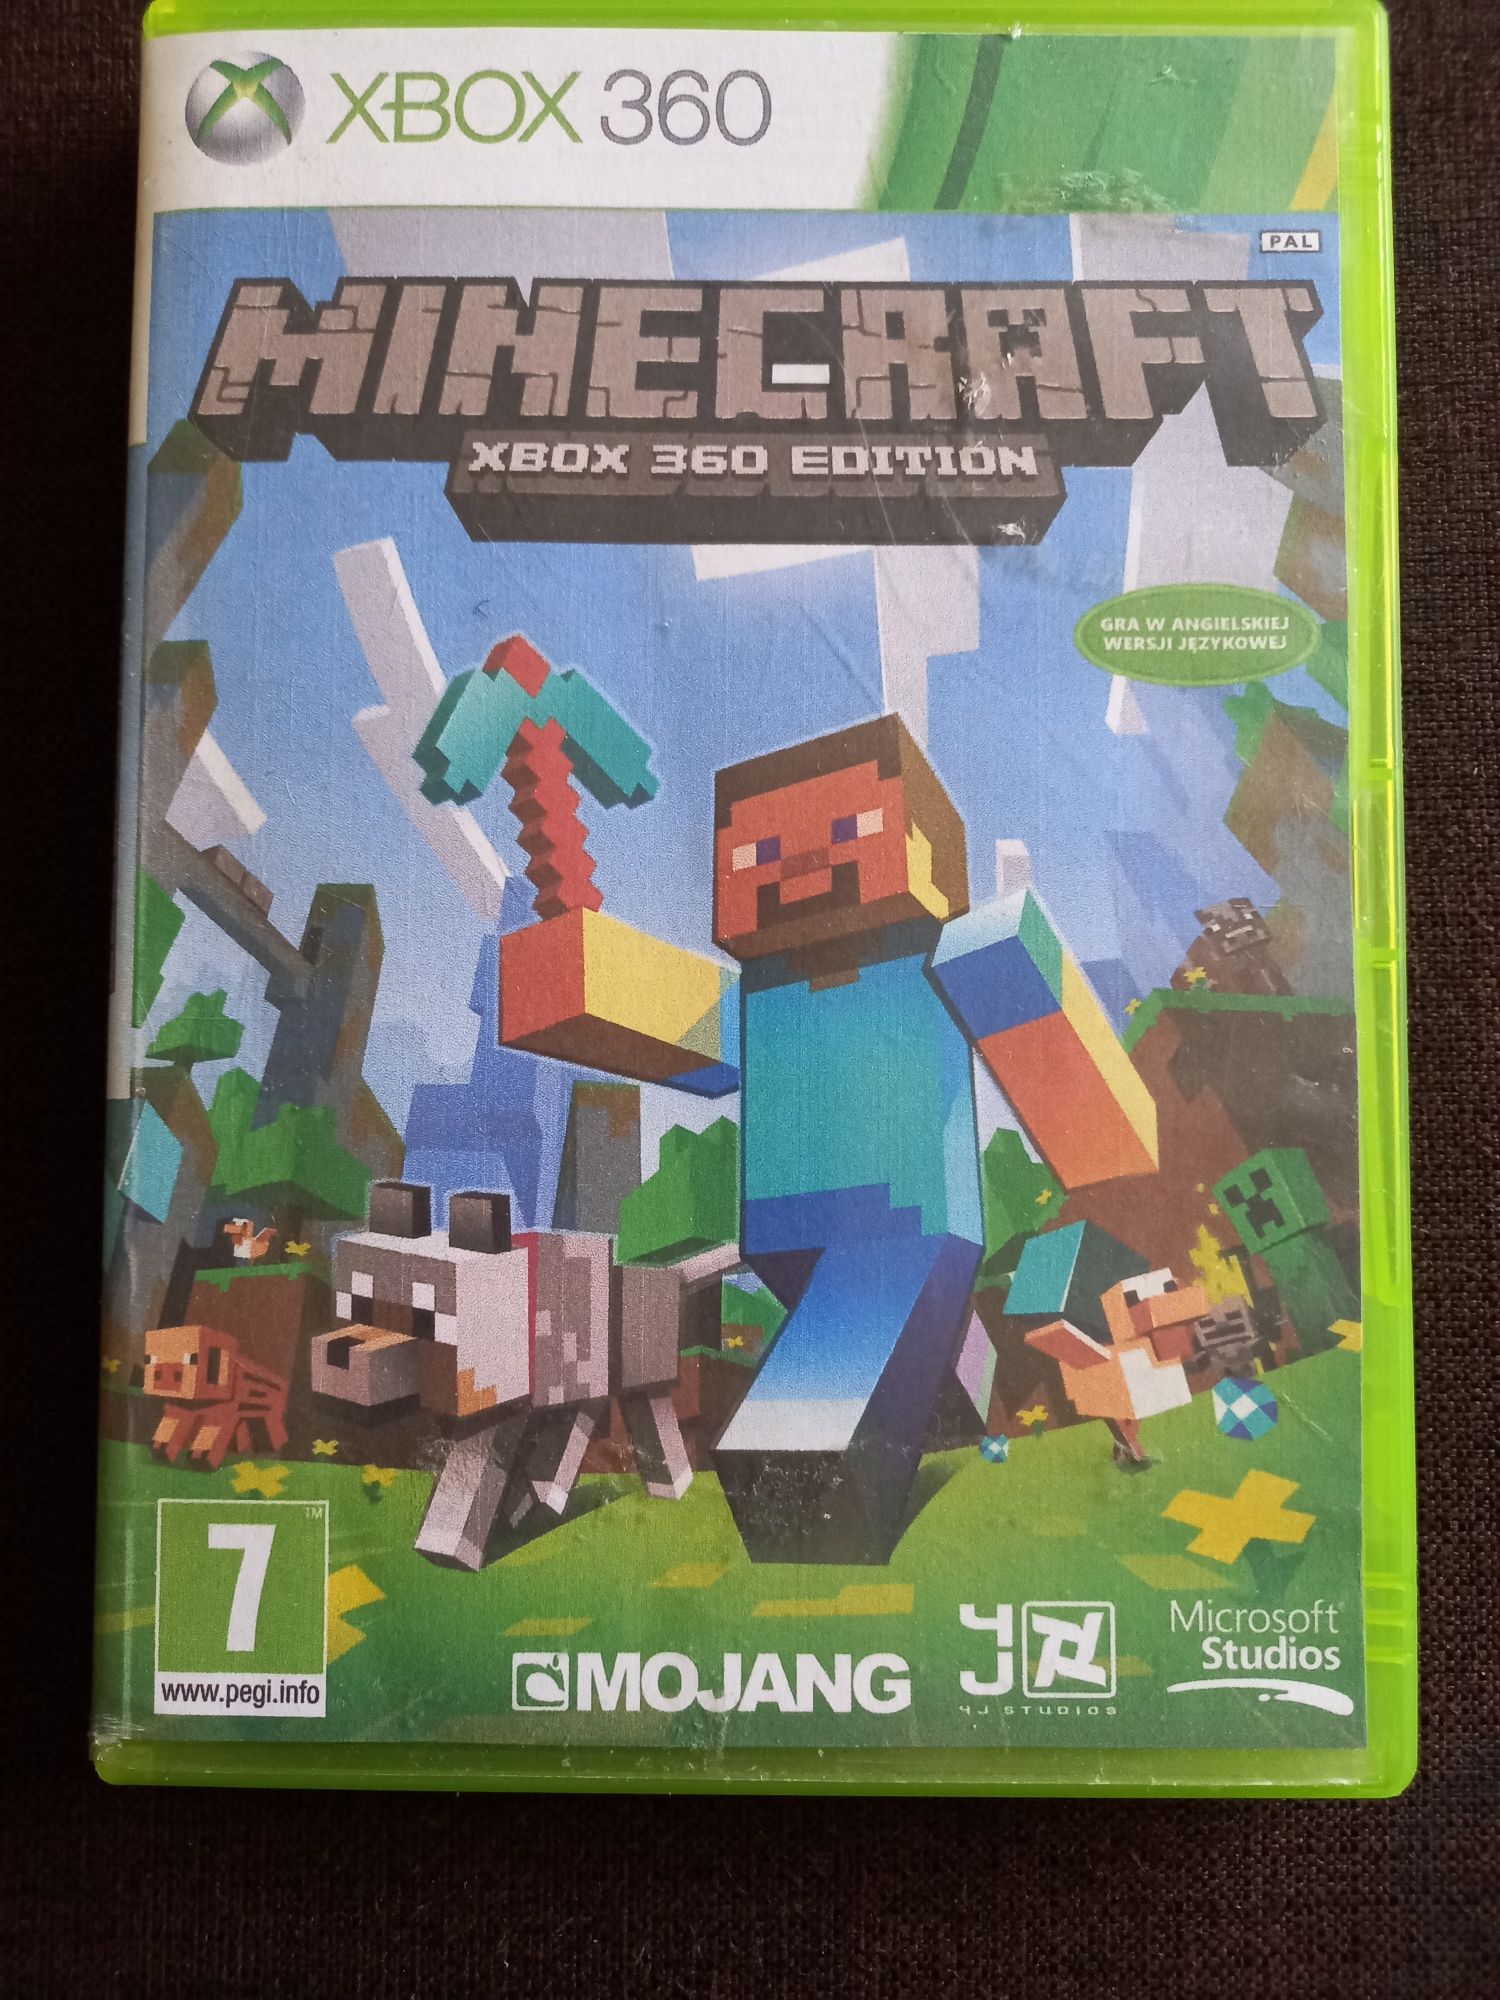 Gra Minecraft Xbox360 edition na konsolę xbox 360